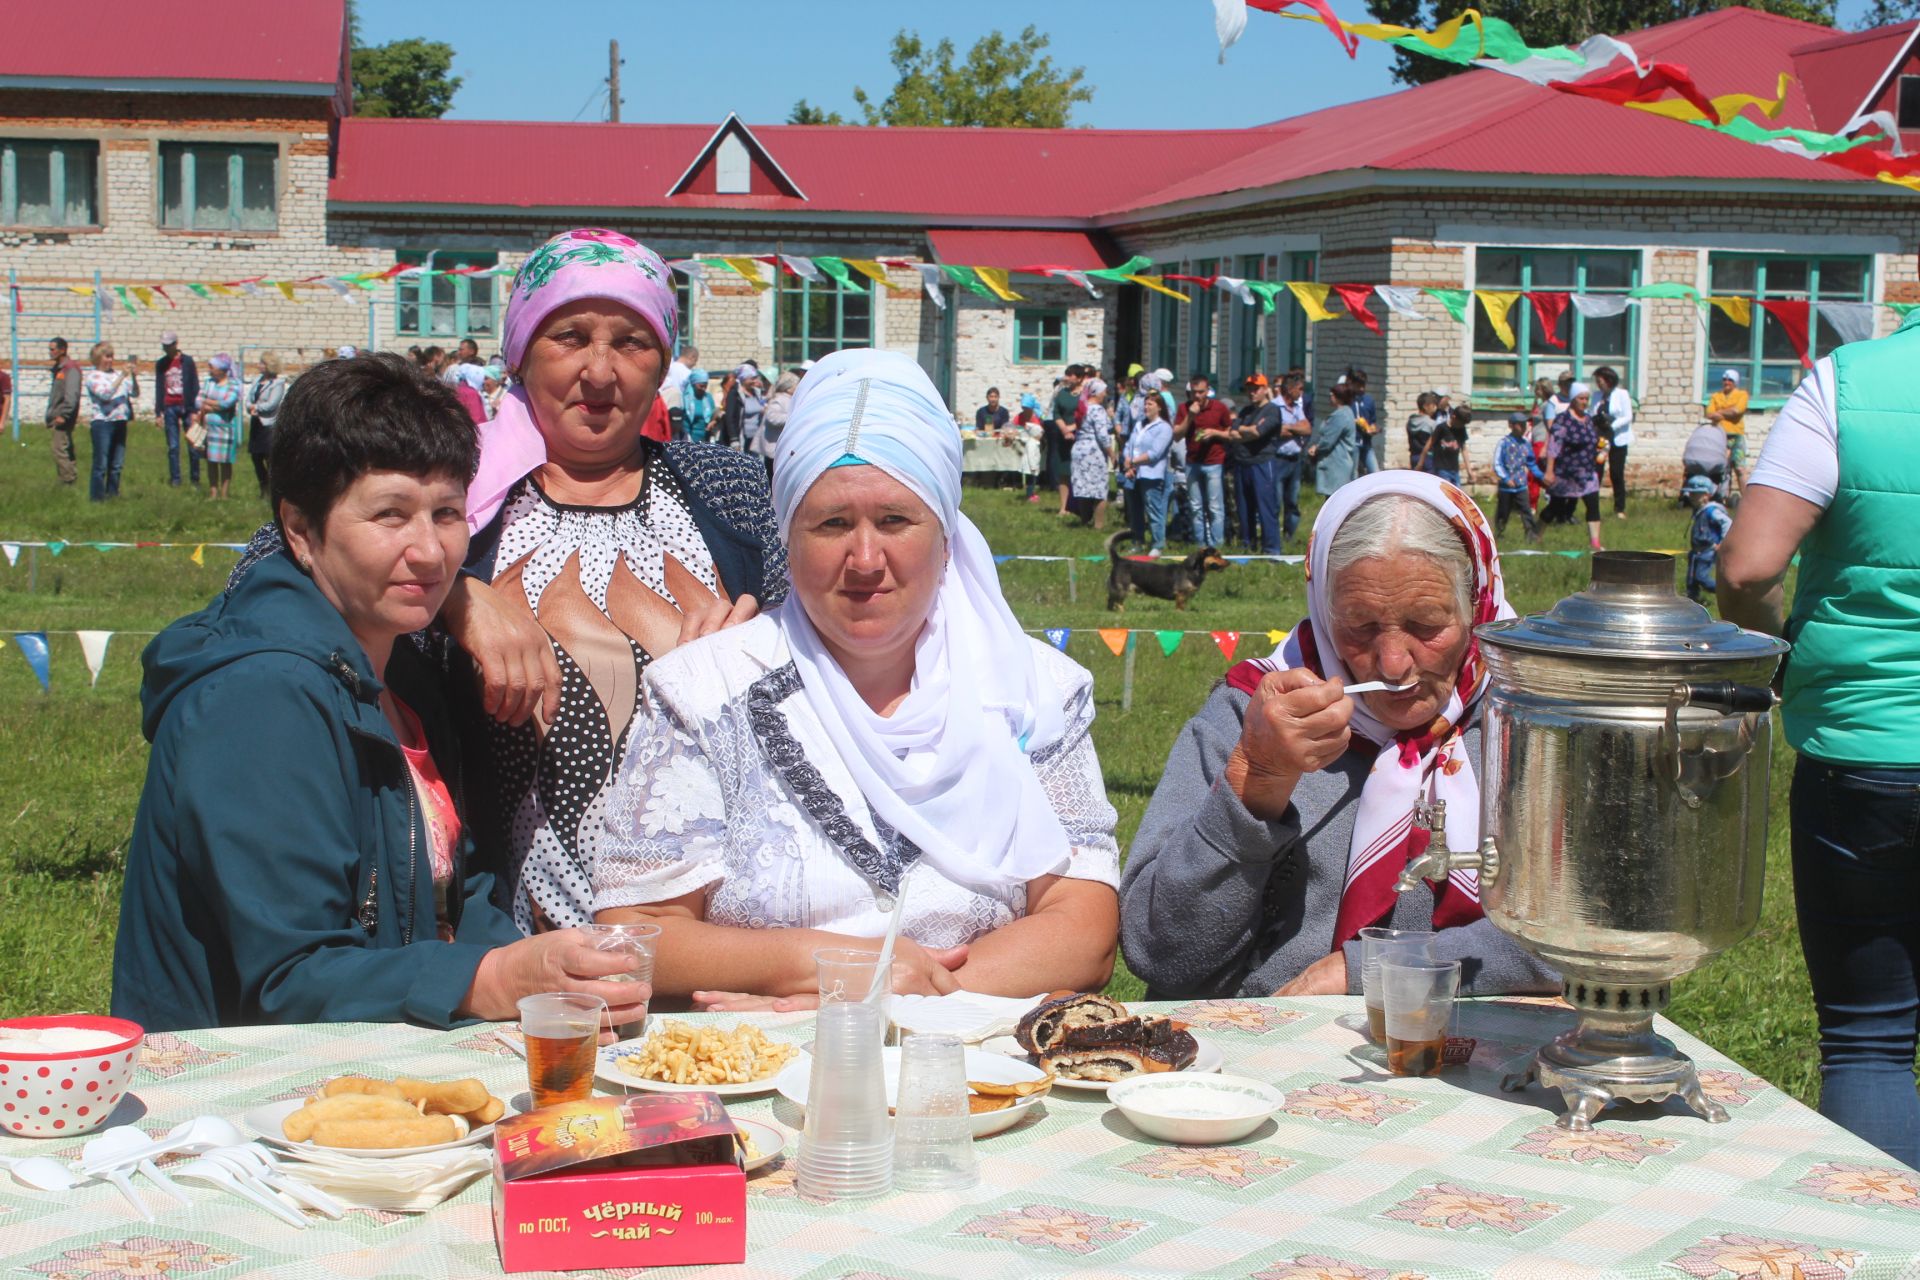 На Сабантуе деревни Бикулово всех детей угощали мороженым, а перед сельчанами выступили артисты из Казани